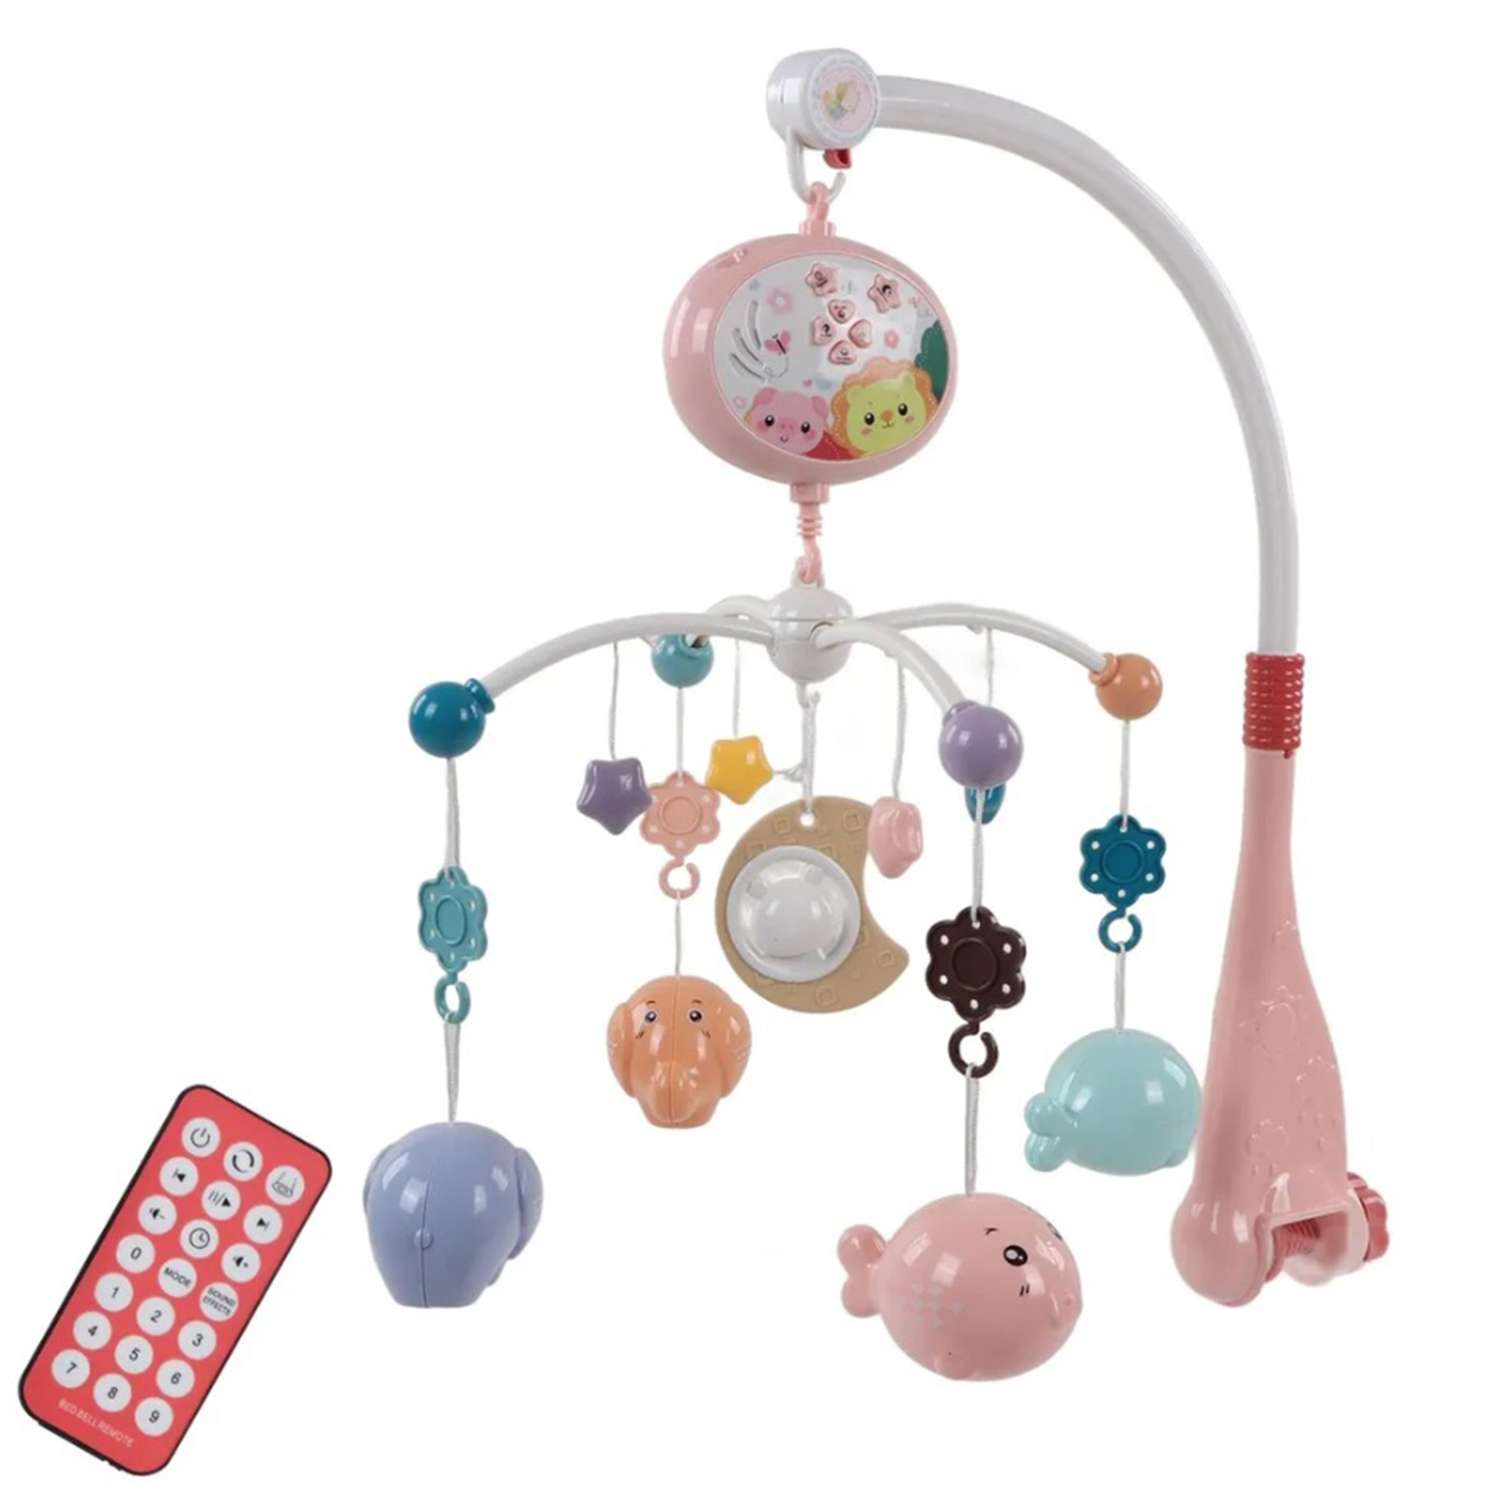 Мобиль розовый рыбки и слоник ТОТОША с пультом и проектором каруселька детская в кроватку для новорожденных - фото 3